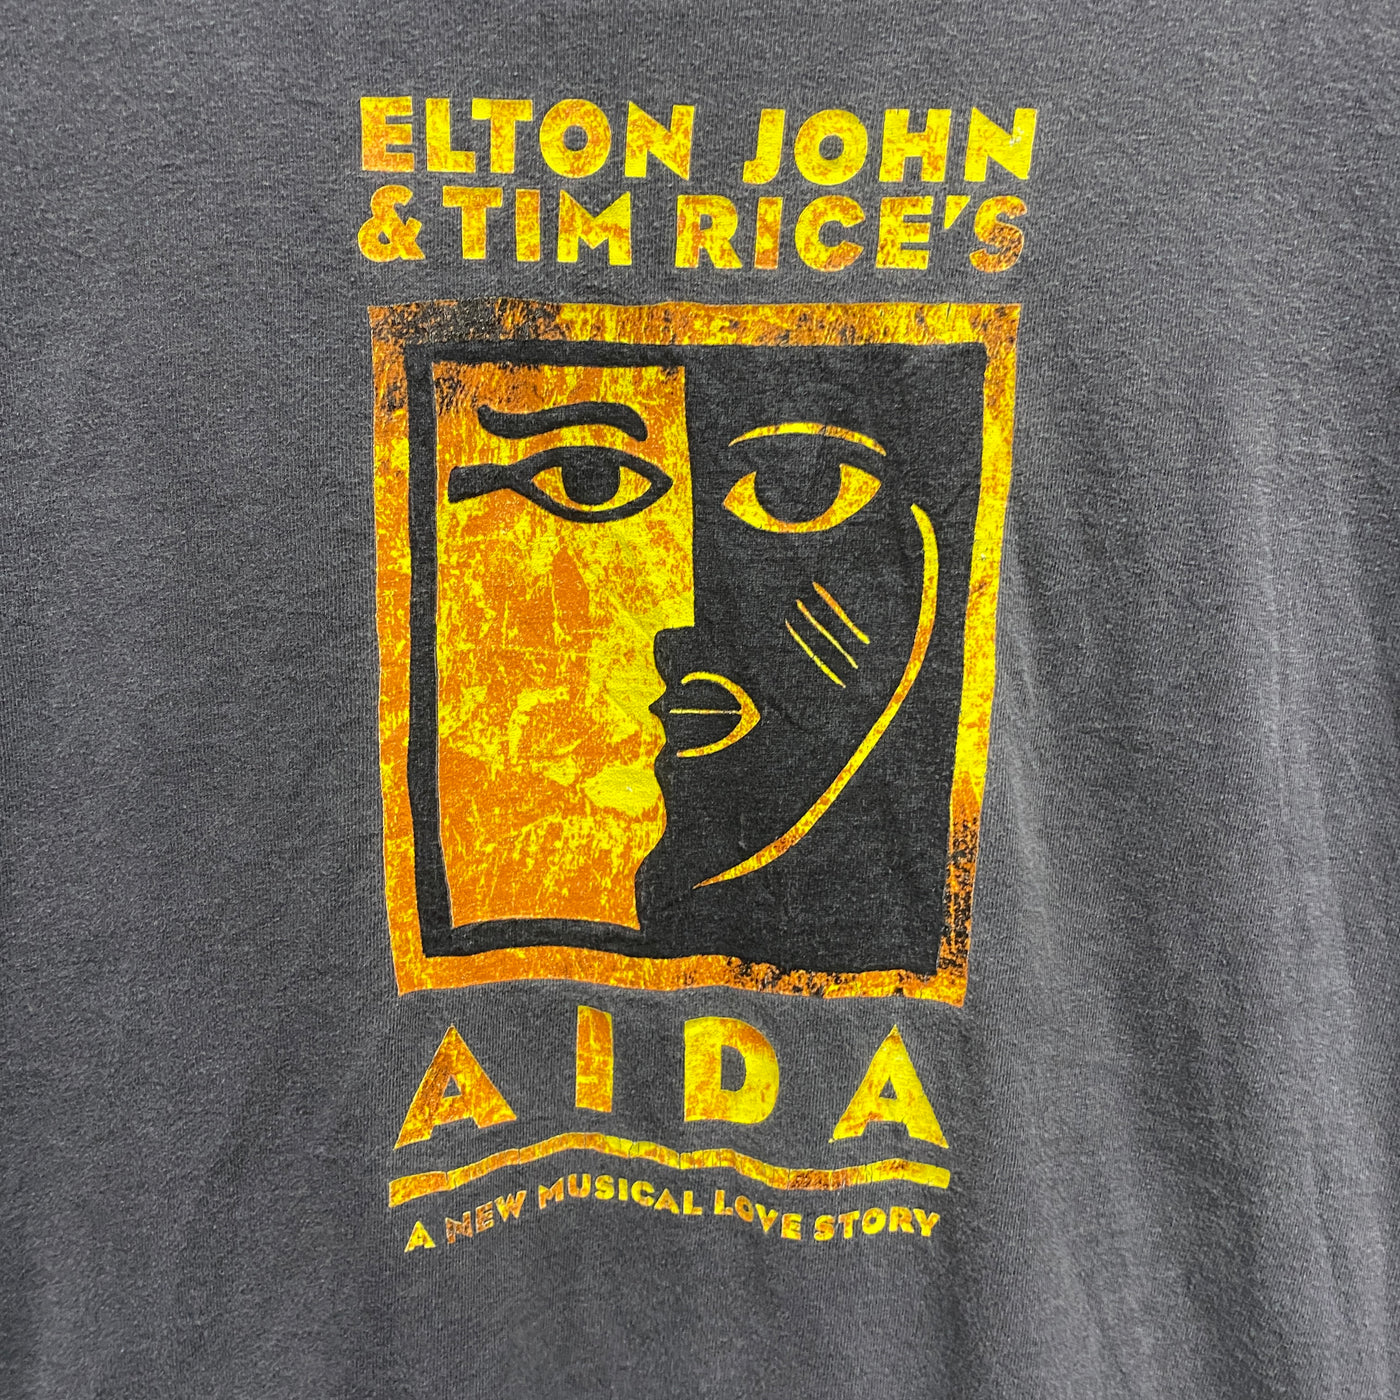 '99 Elton John & Tim Rice's Black Music T-shirt sz L